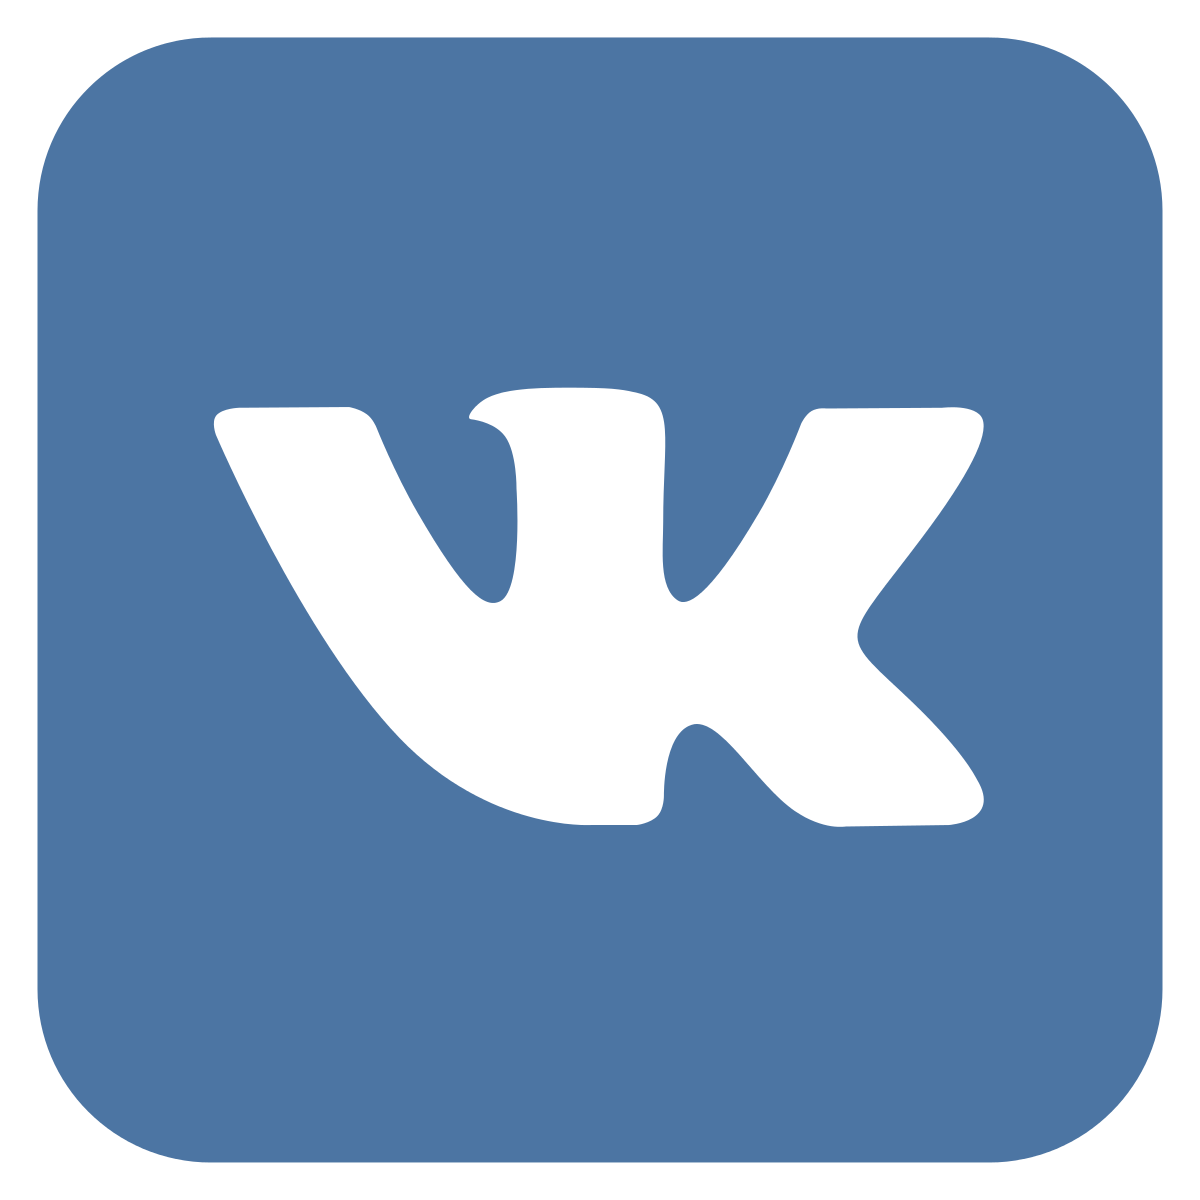 Vk.com страница Джеронимо